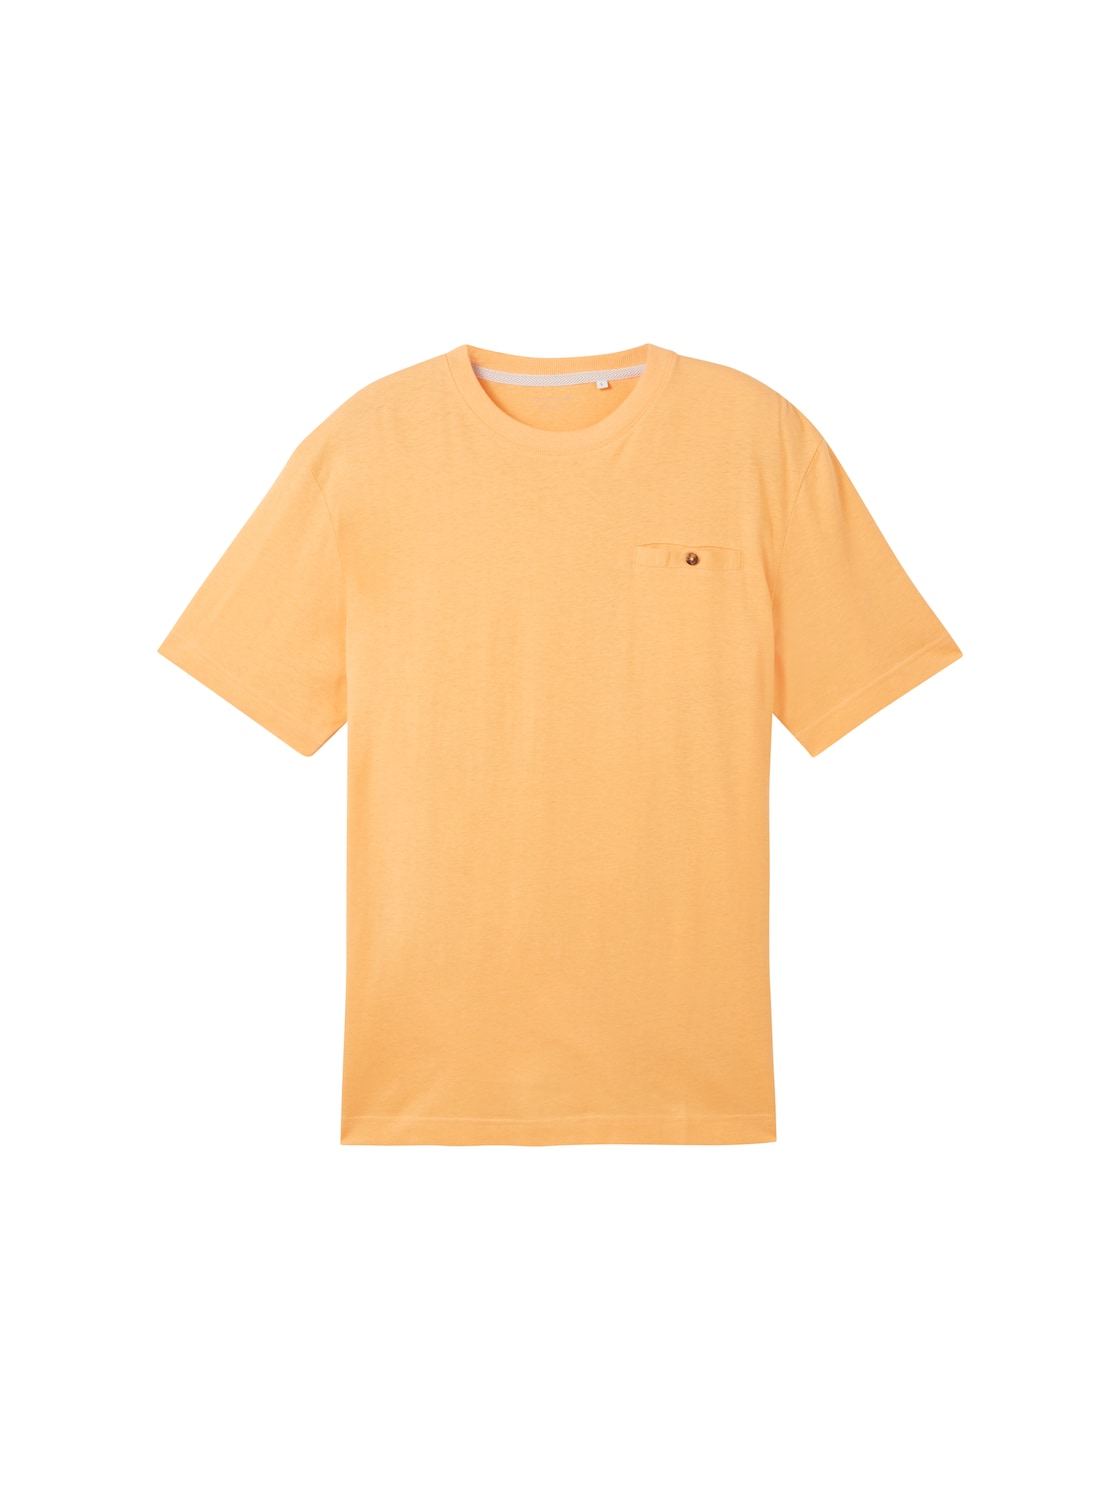 TOM TAILOR Herren T-Shirt mit Leinenanteil, orange, Uni, Gr. XXL von Tom Tailor